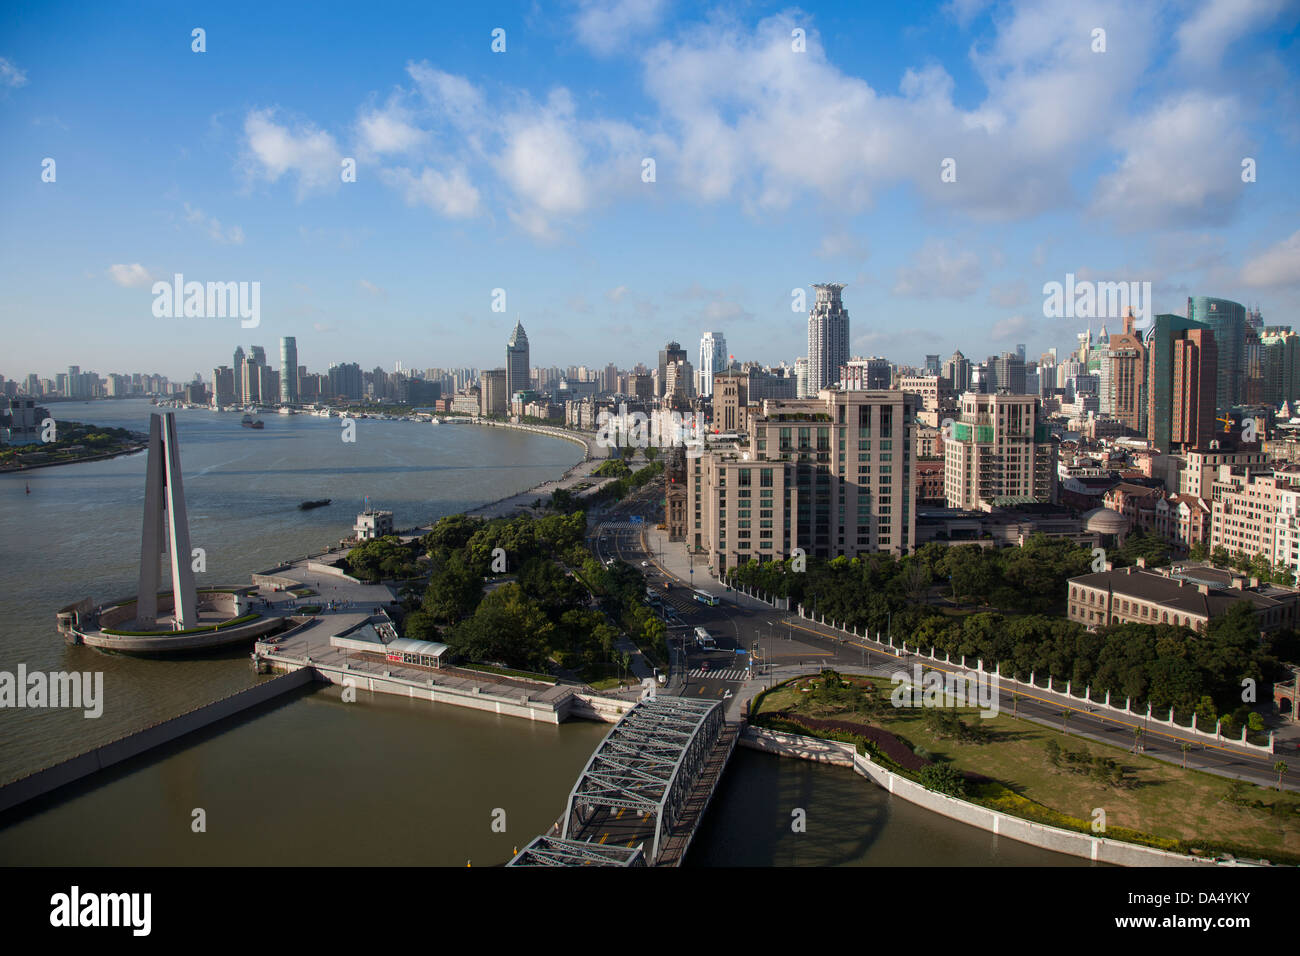 China, Shanghai, Skyline, Bund, Puxi, Huangpu River, Suzhou Creek Stock Photo